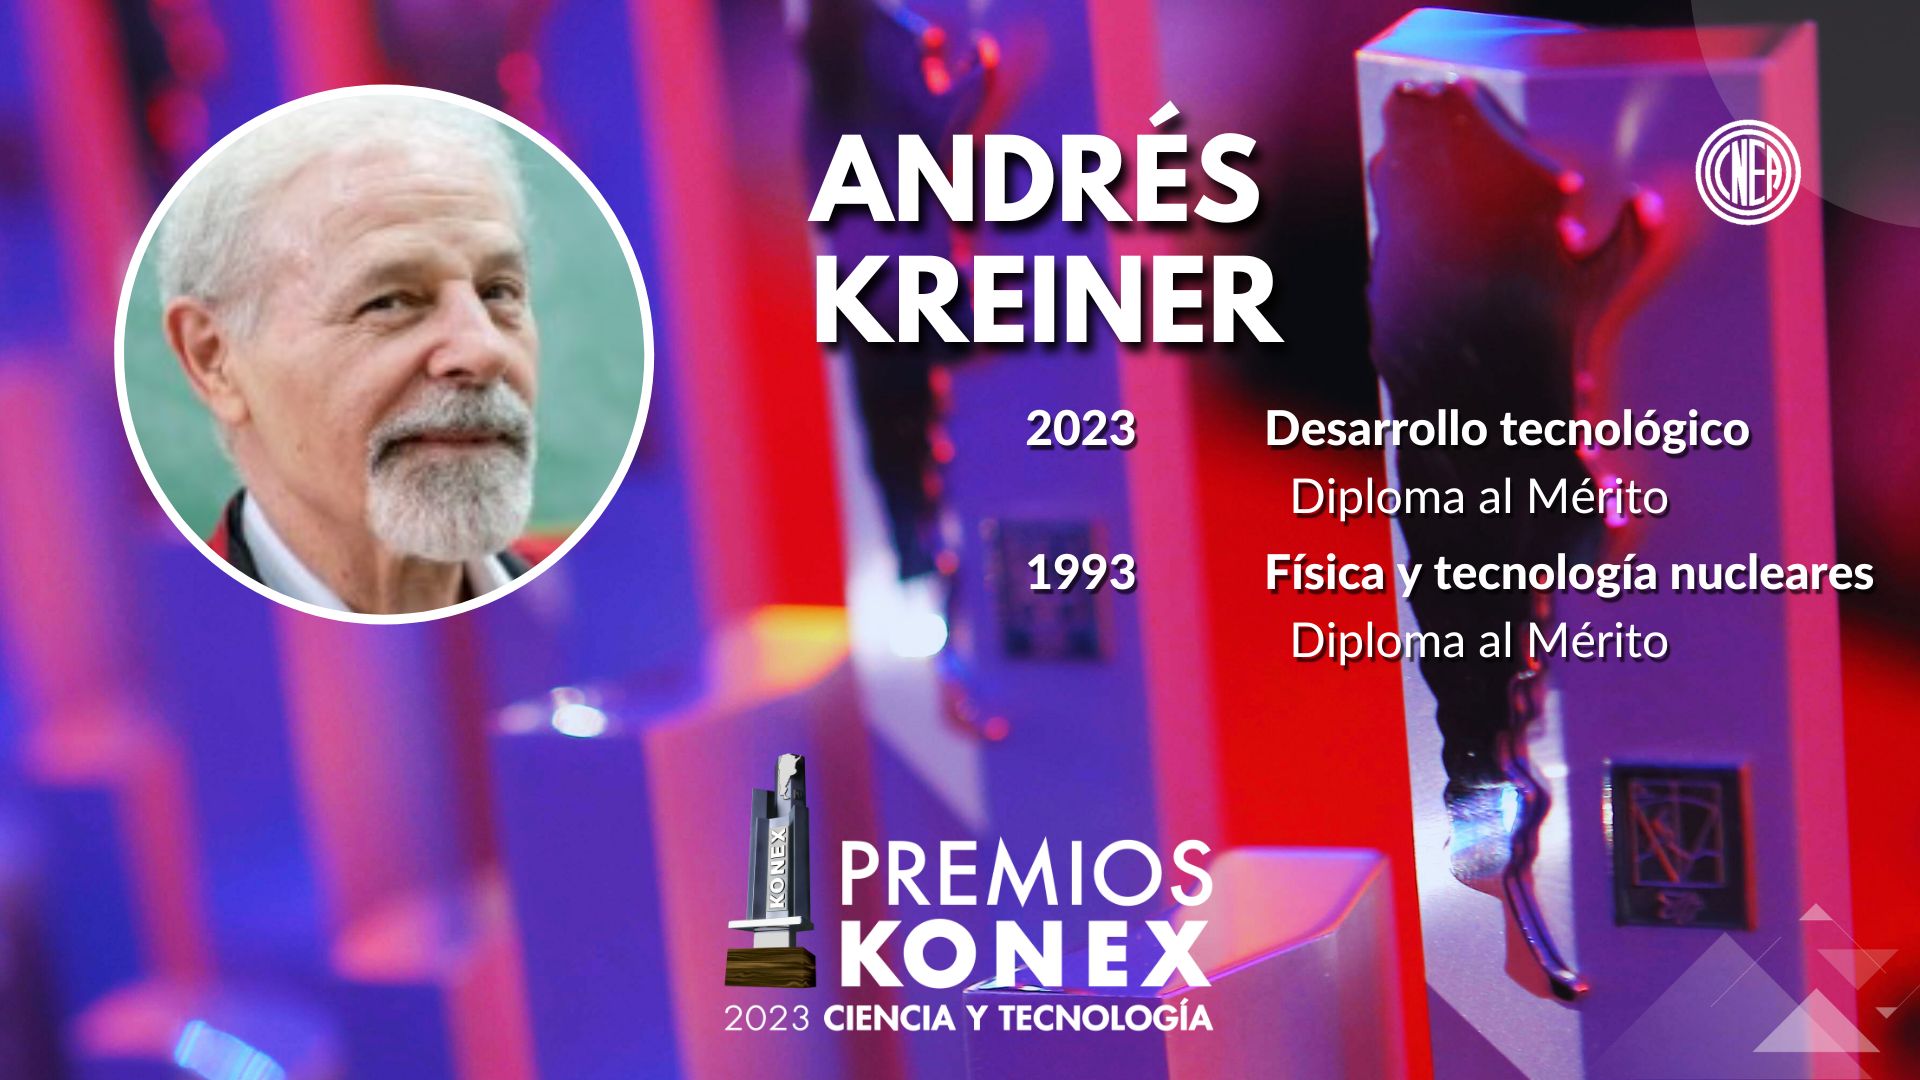 Andrés Kreiner